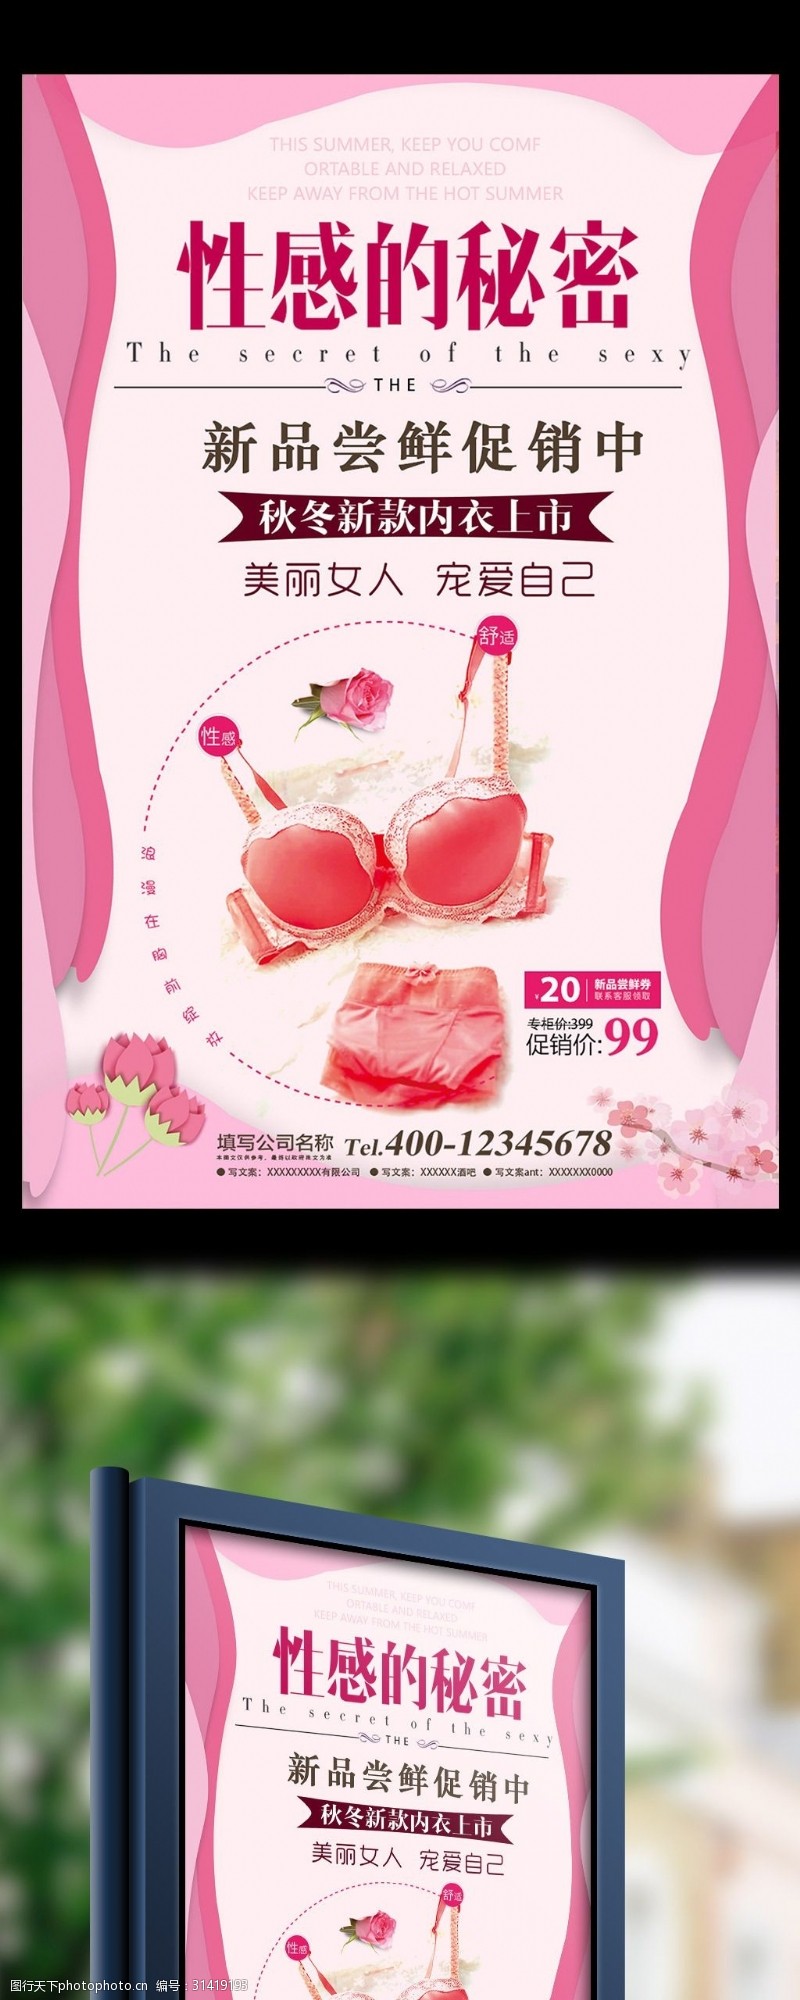 内衣店开业粉色浪漫内衣大促活动海报设计